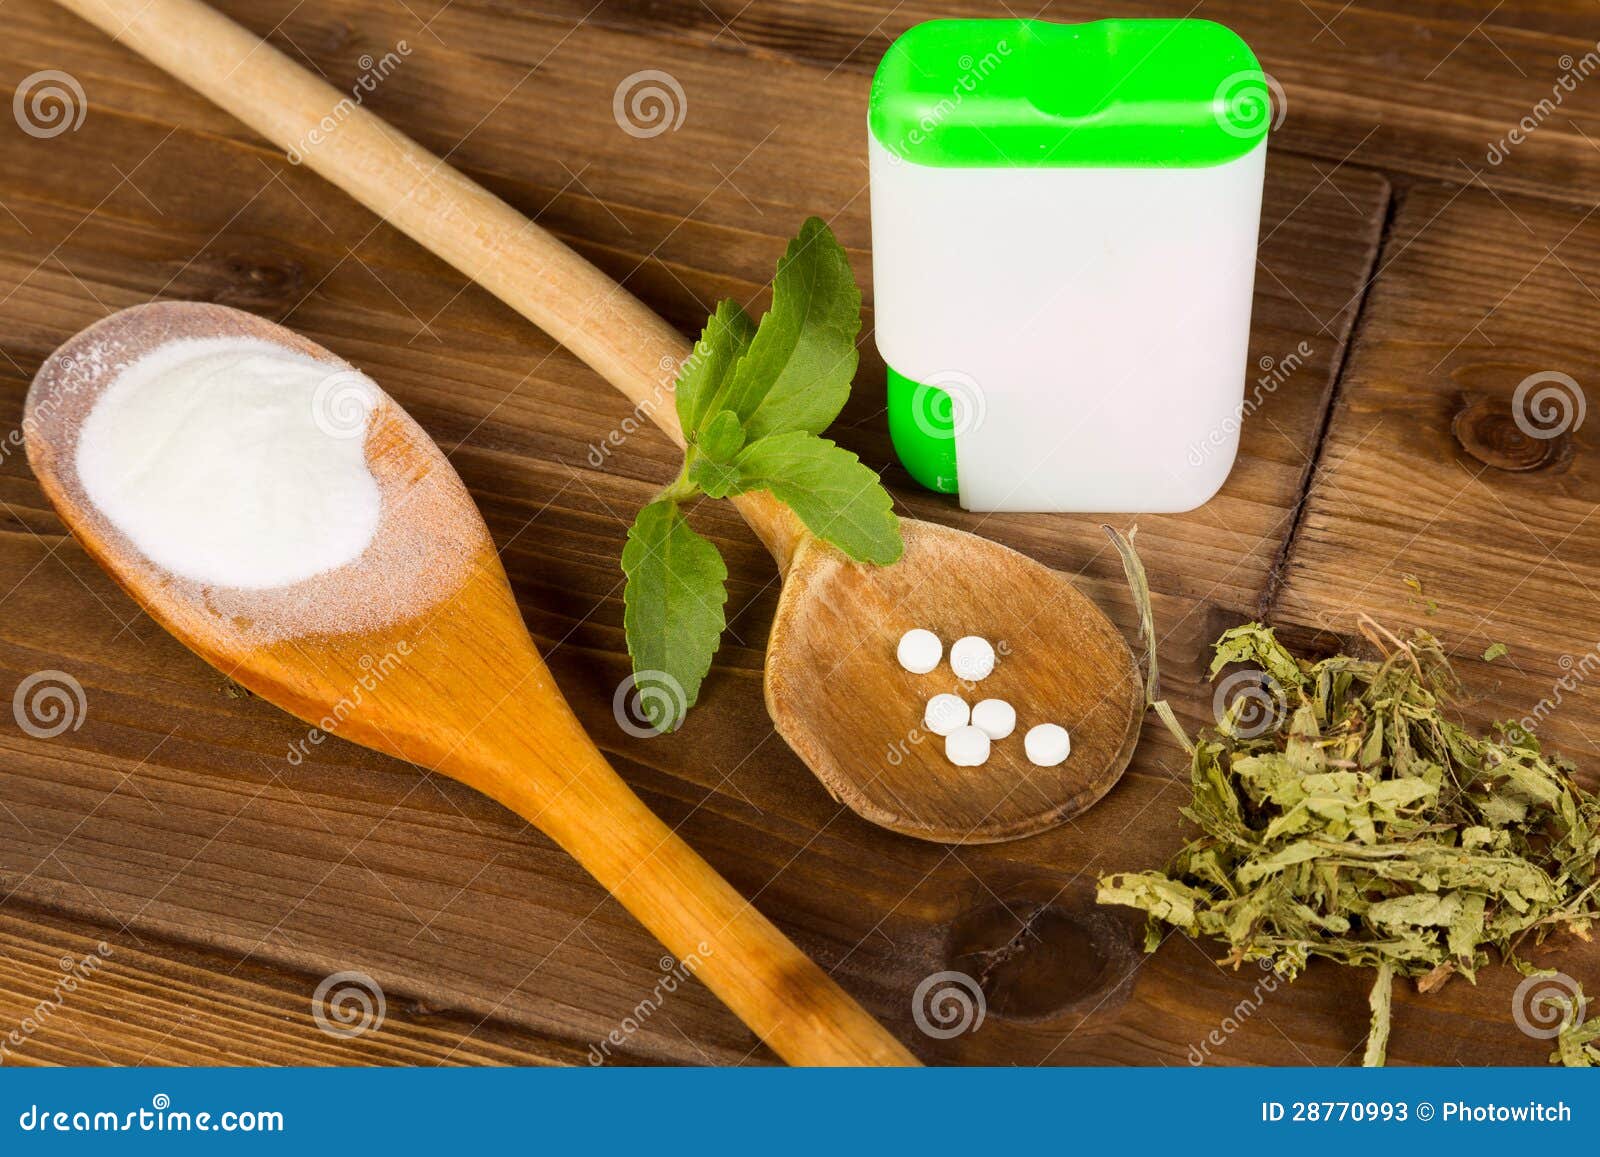 stevia tabs and powder